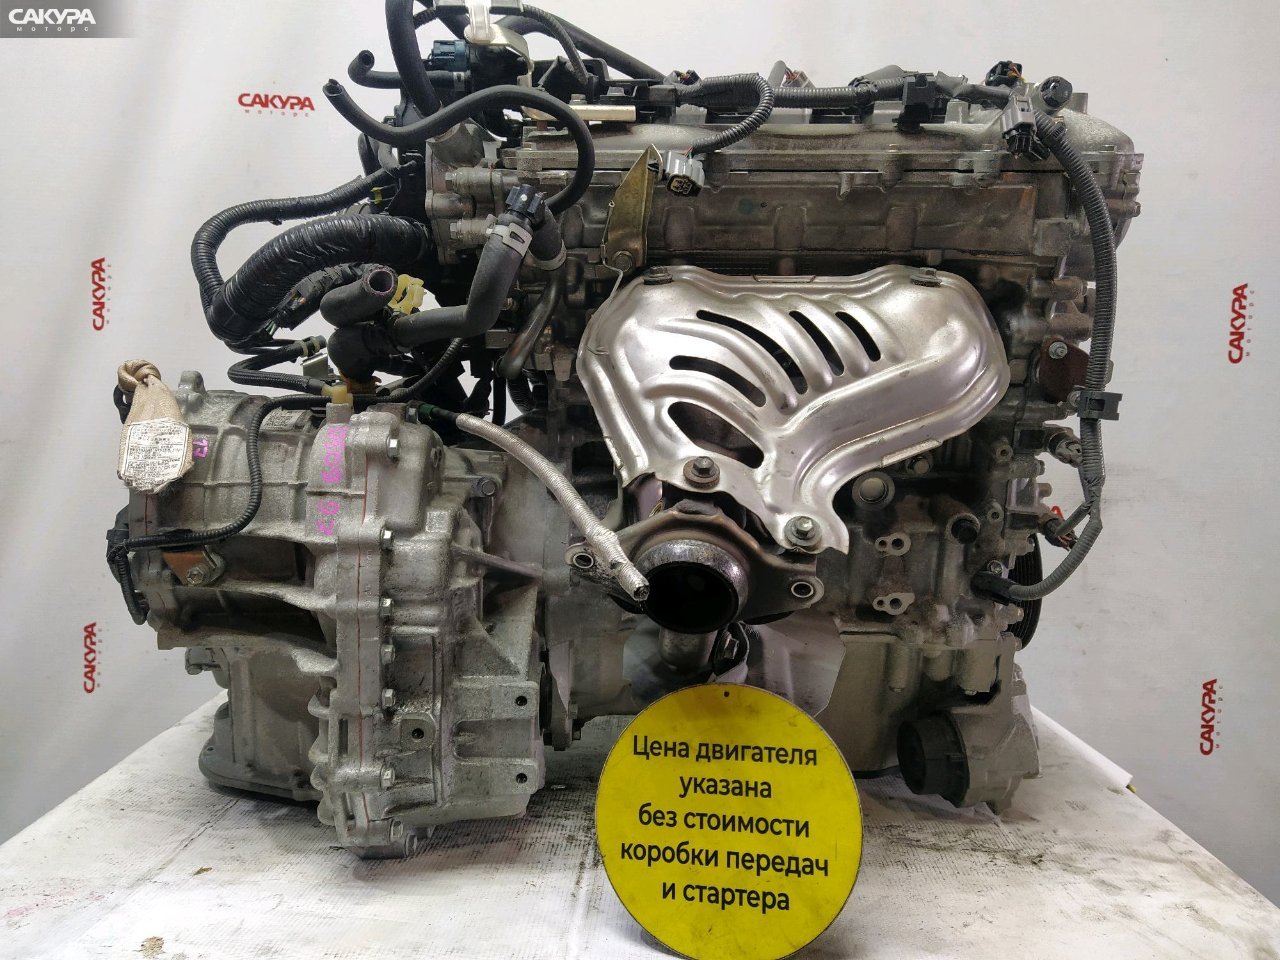 Двигатель Toyota Corolla Fielder ZRE162G 2ZR-FAE: купить в Сакура Красноярск.